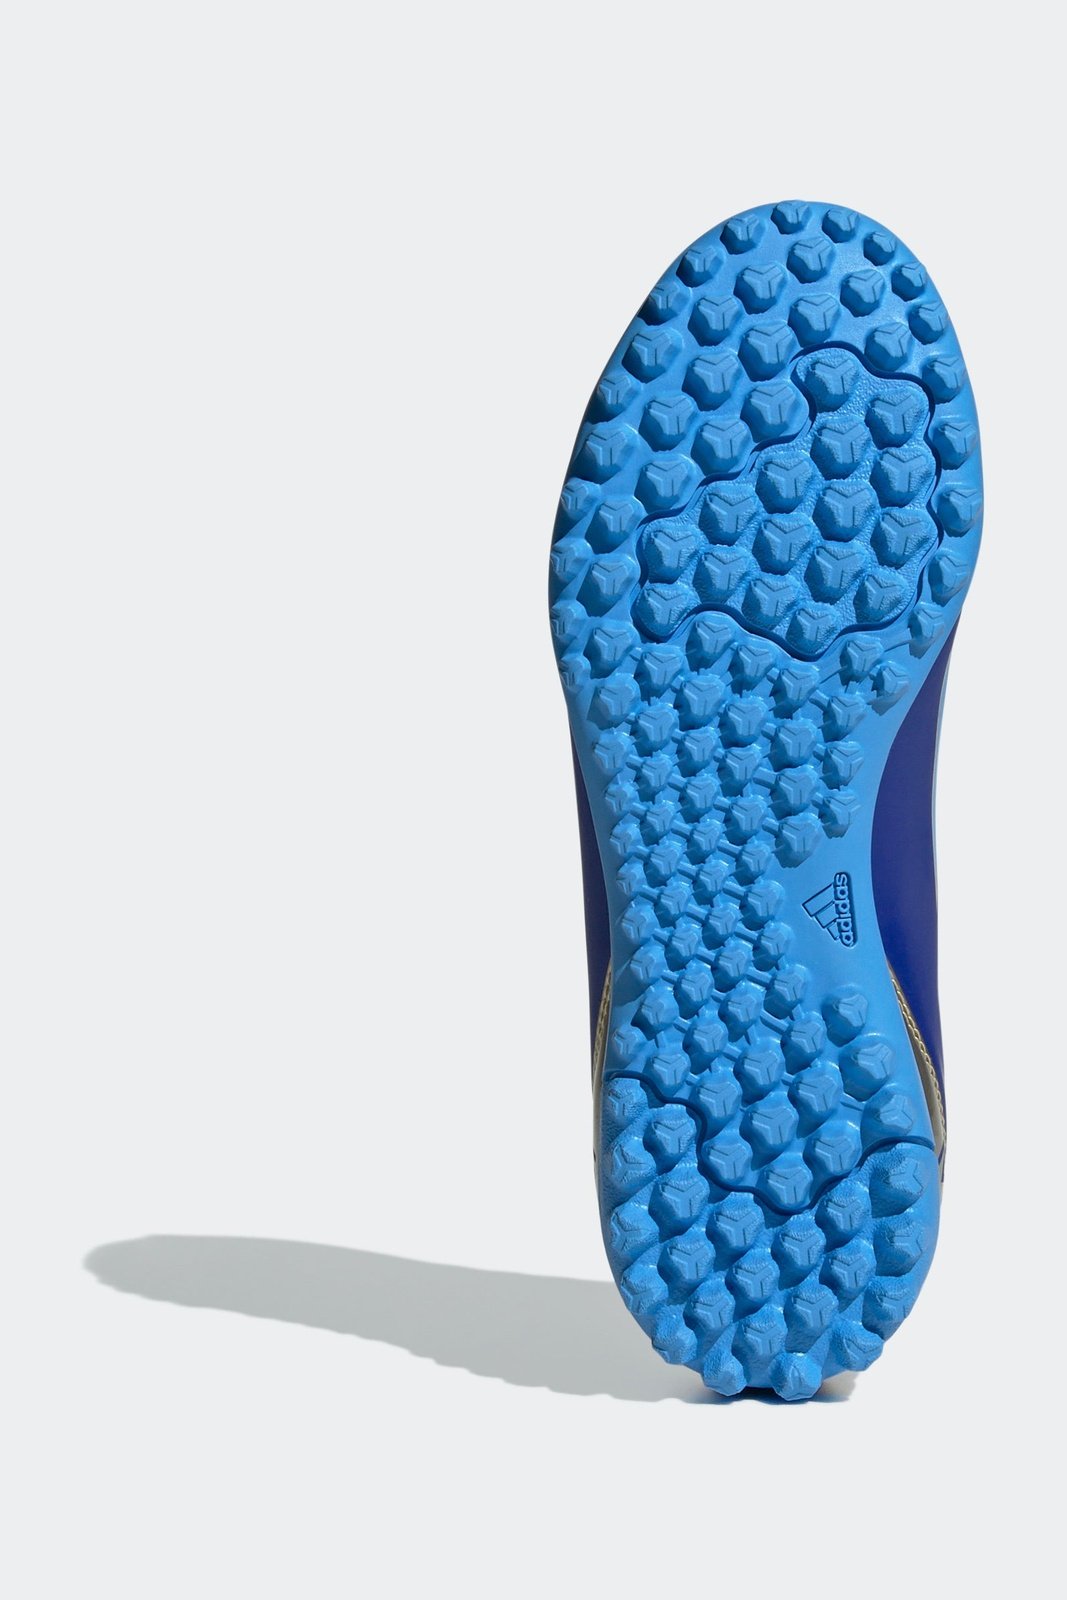 נעלי קטרגל לנוער CRAZYFAST CLUB בצבע כחול ולבן